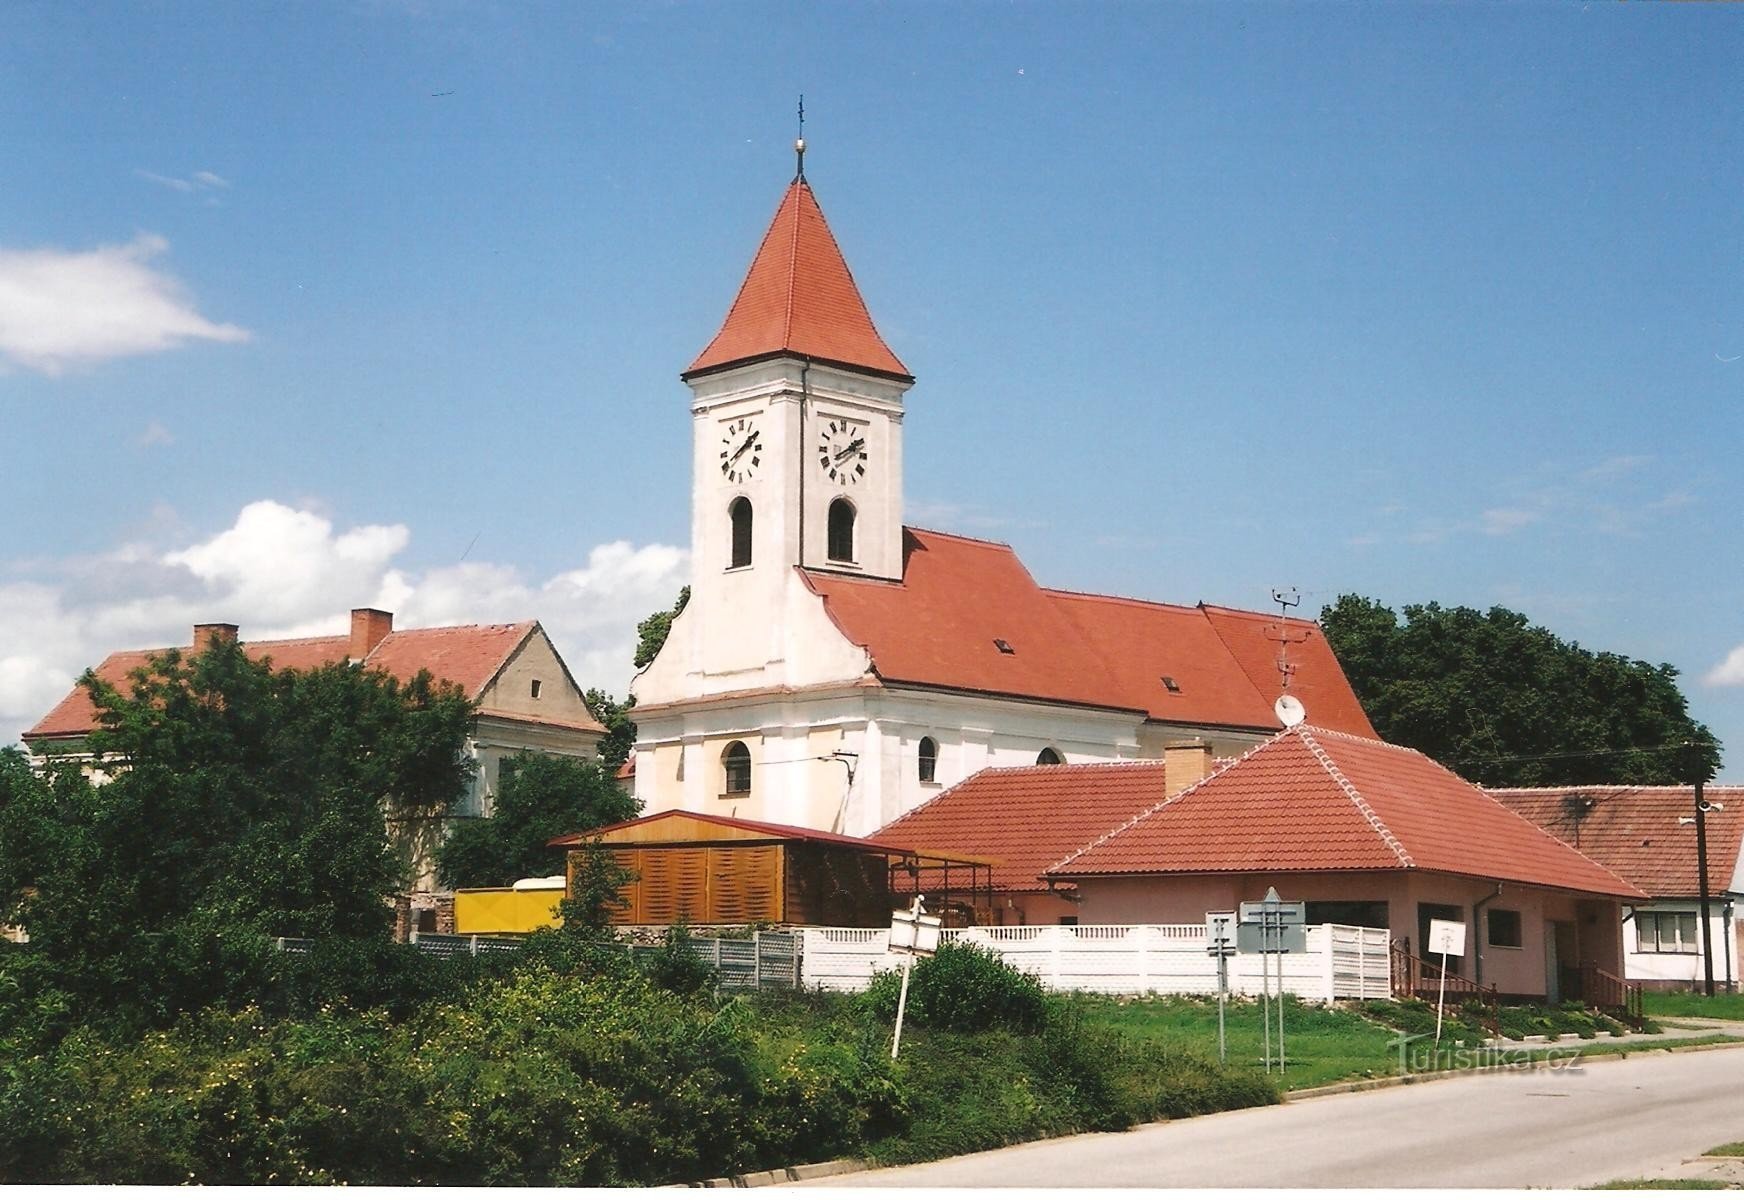 Church of St. Jiljí - general view